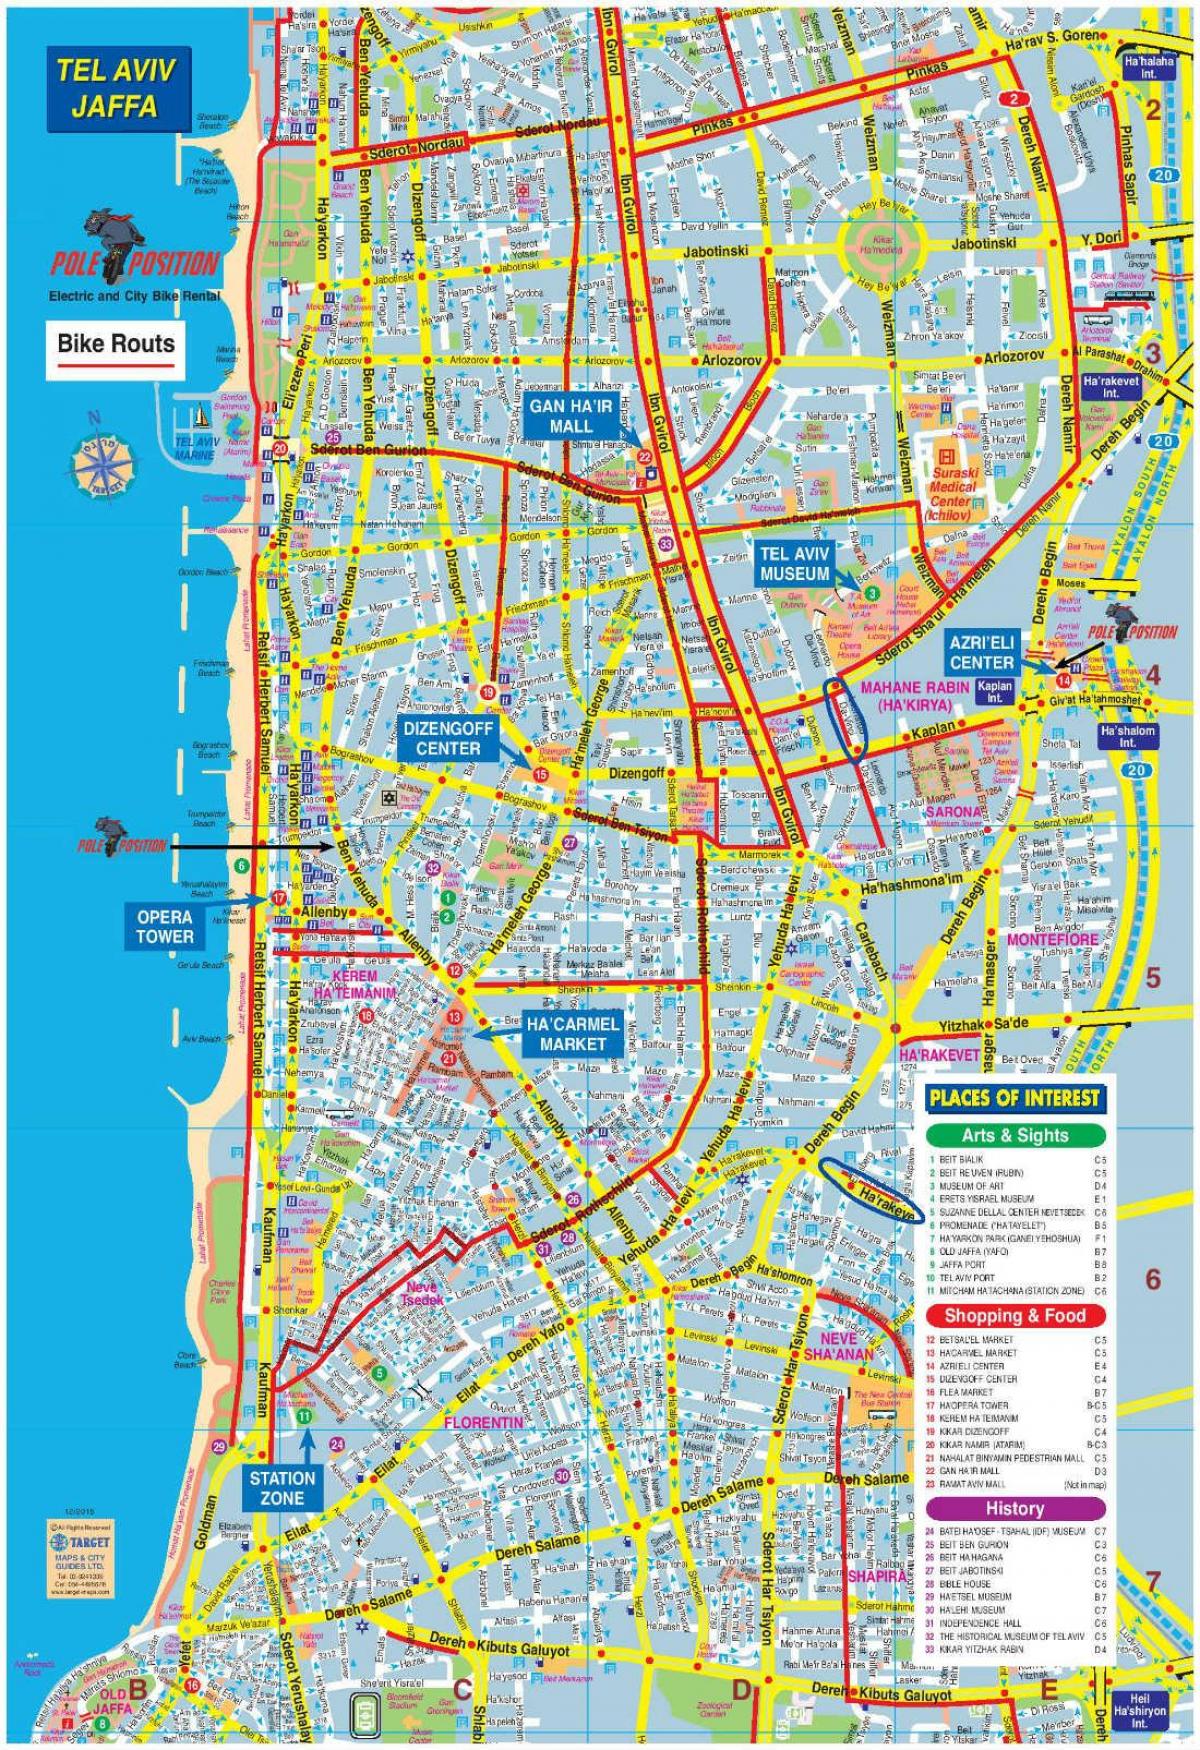 mappa di Tel Aviv moto